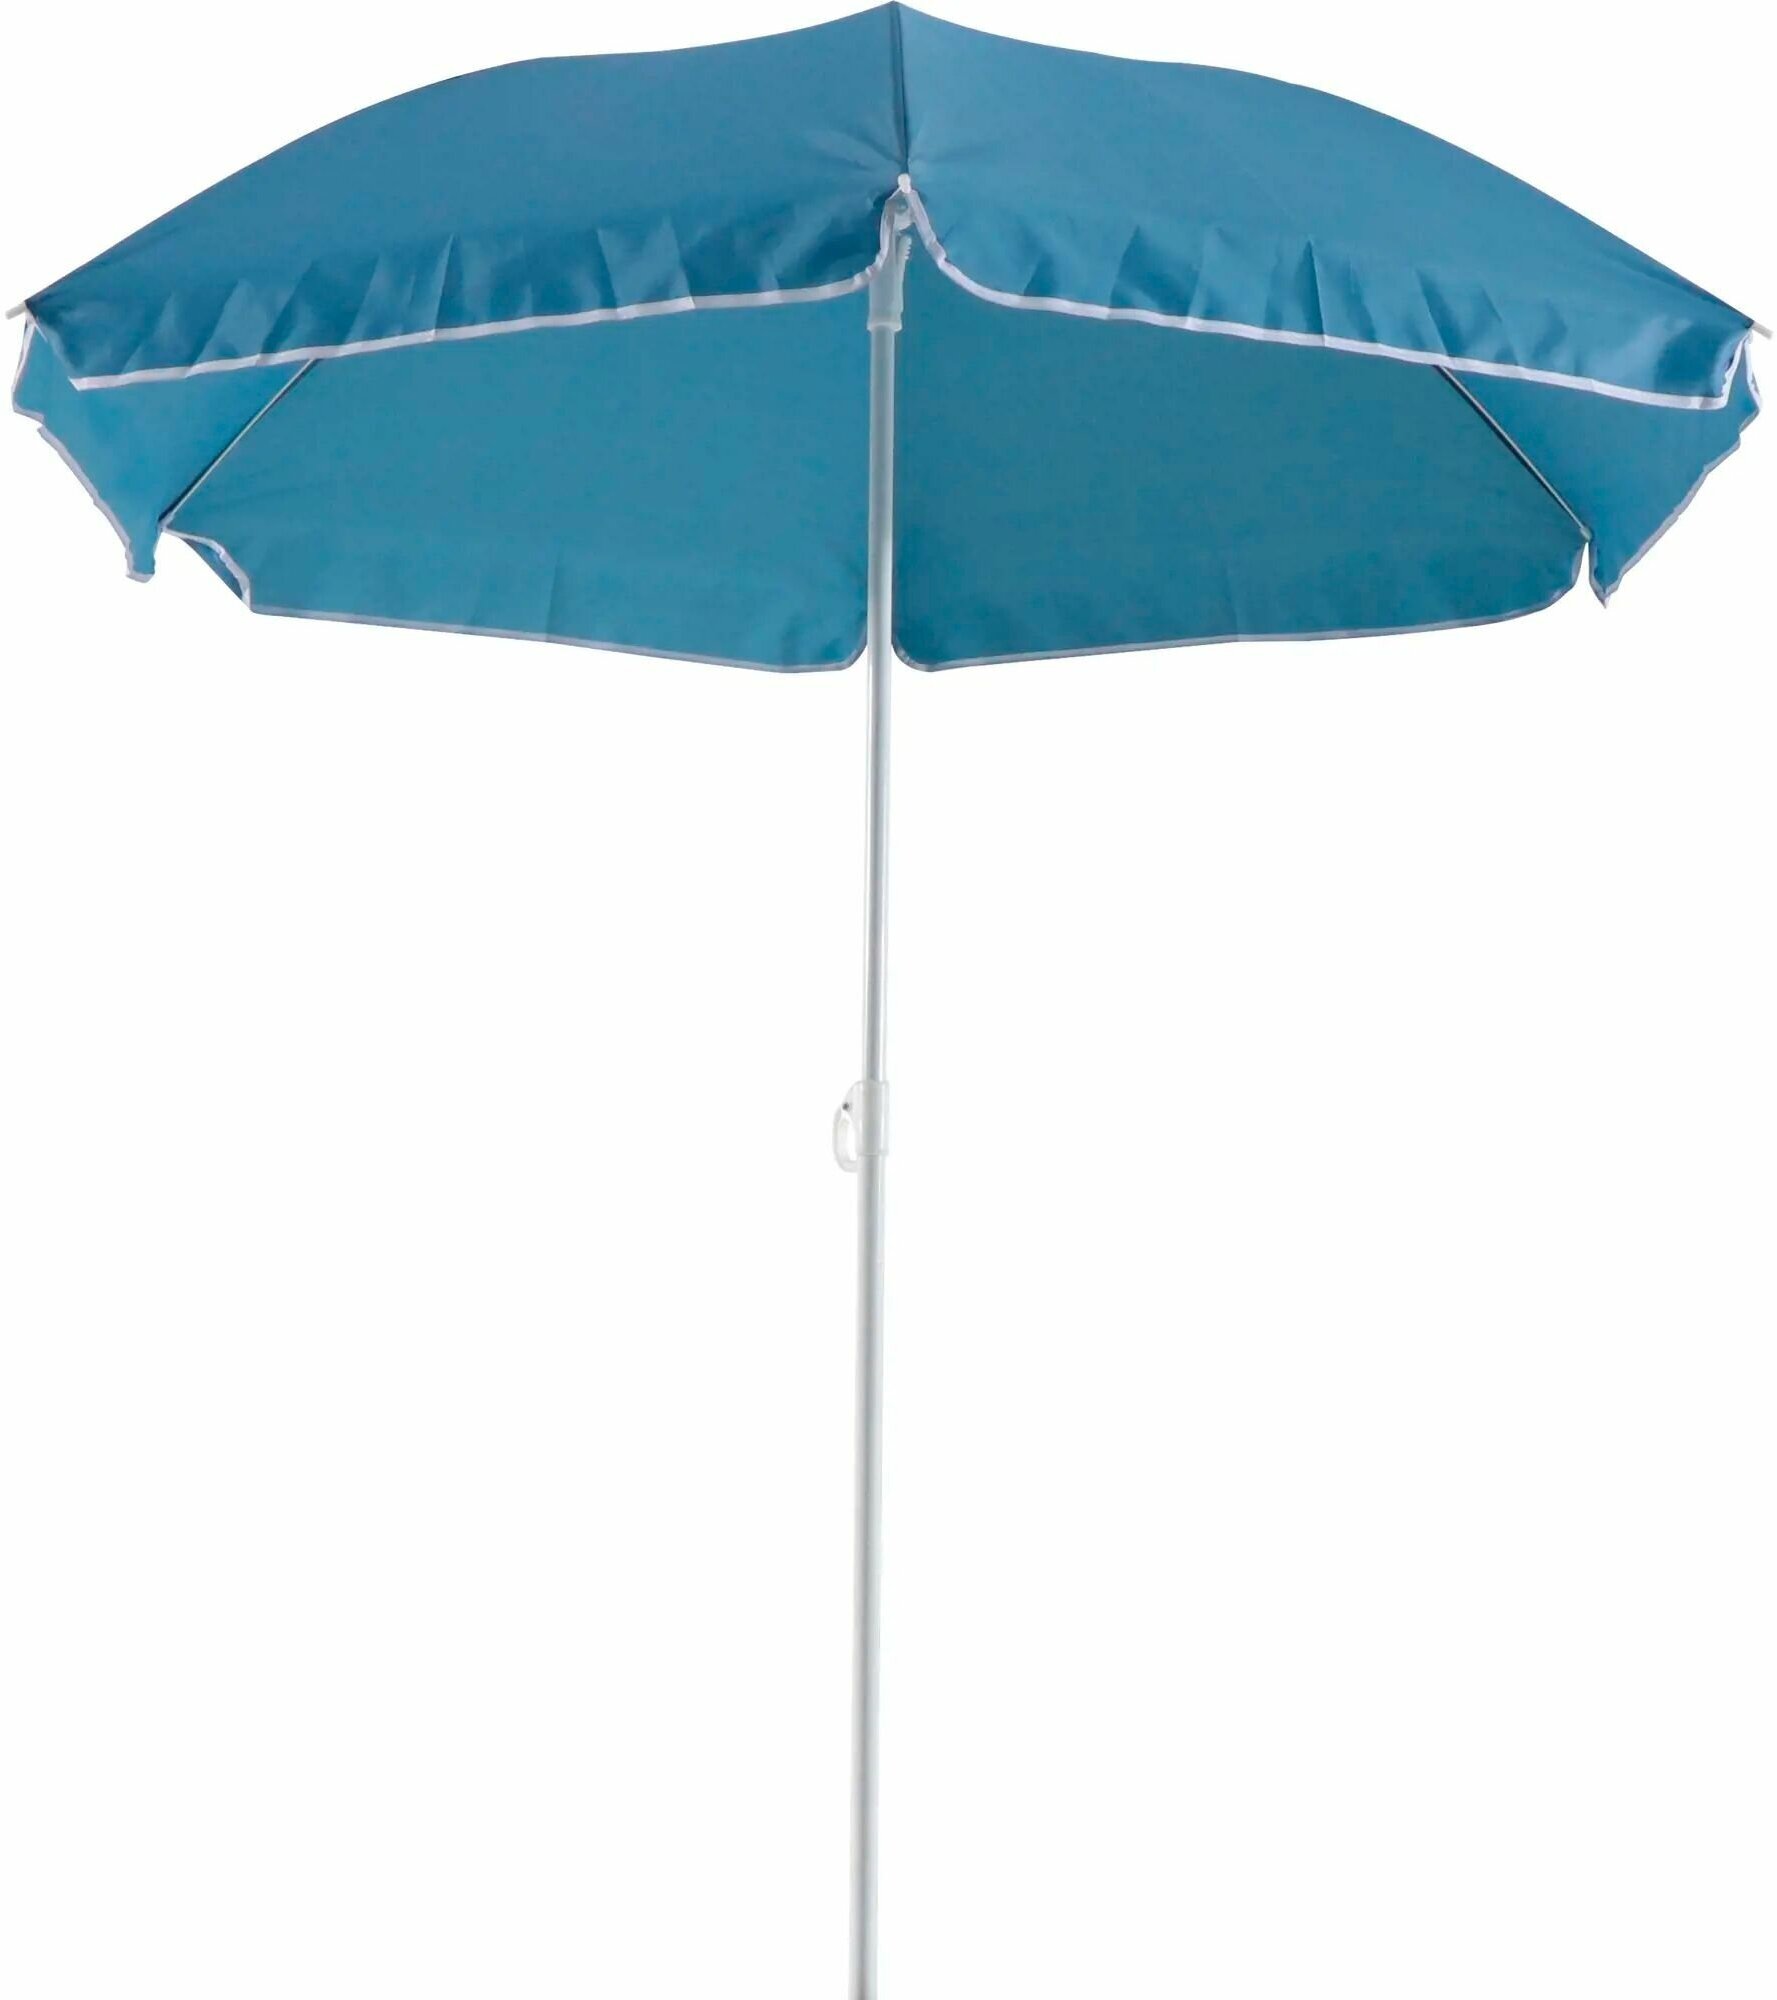 Пляжный зонт, диаметр 180 см, высота 185 см